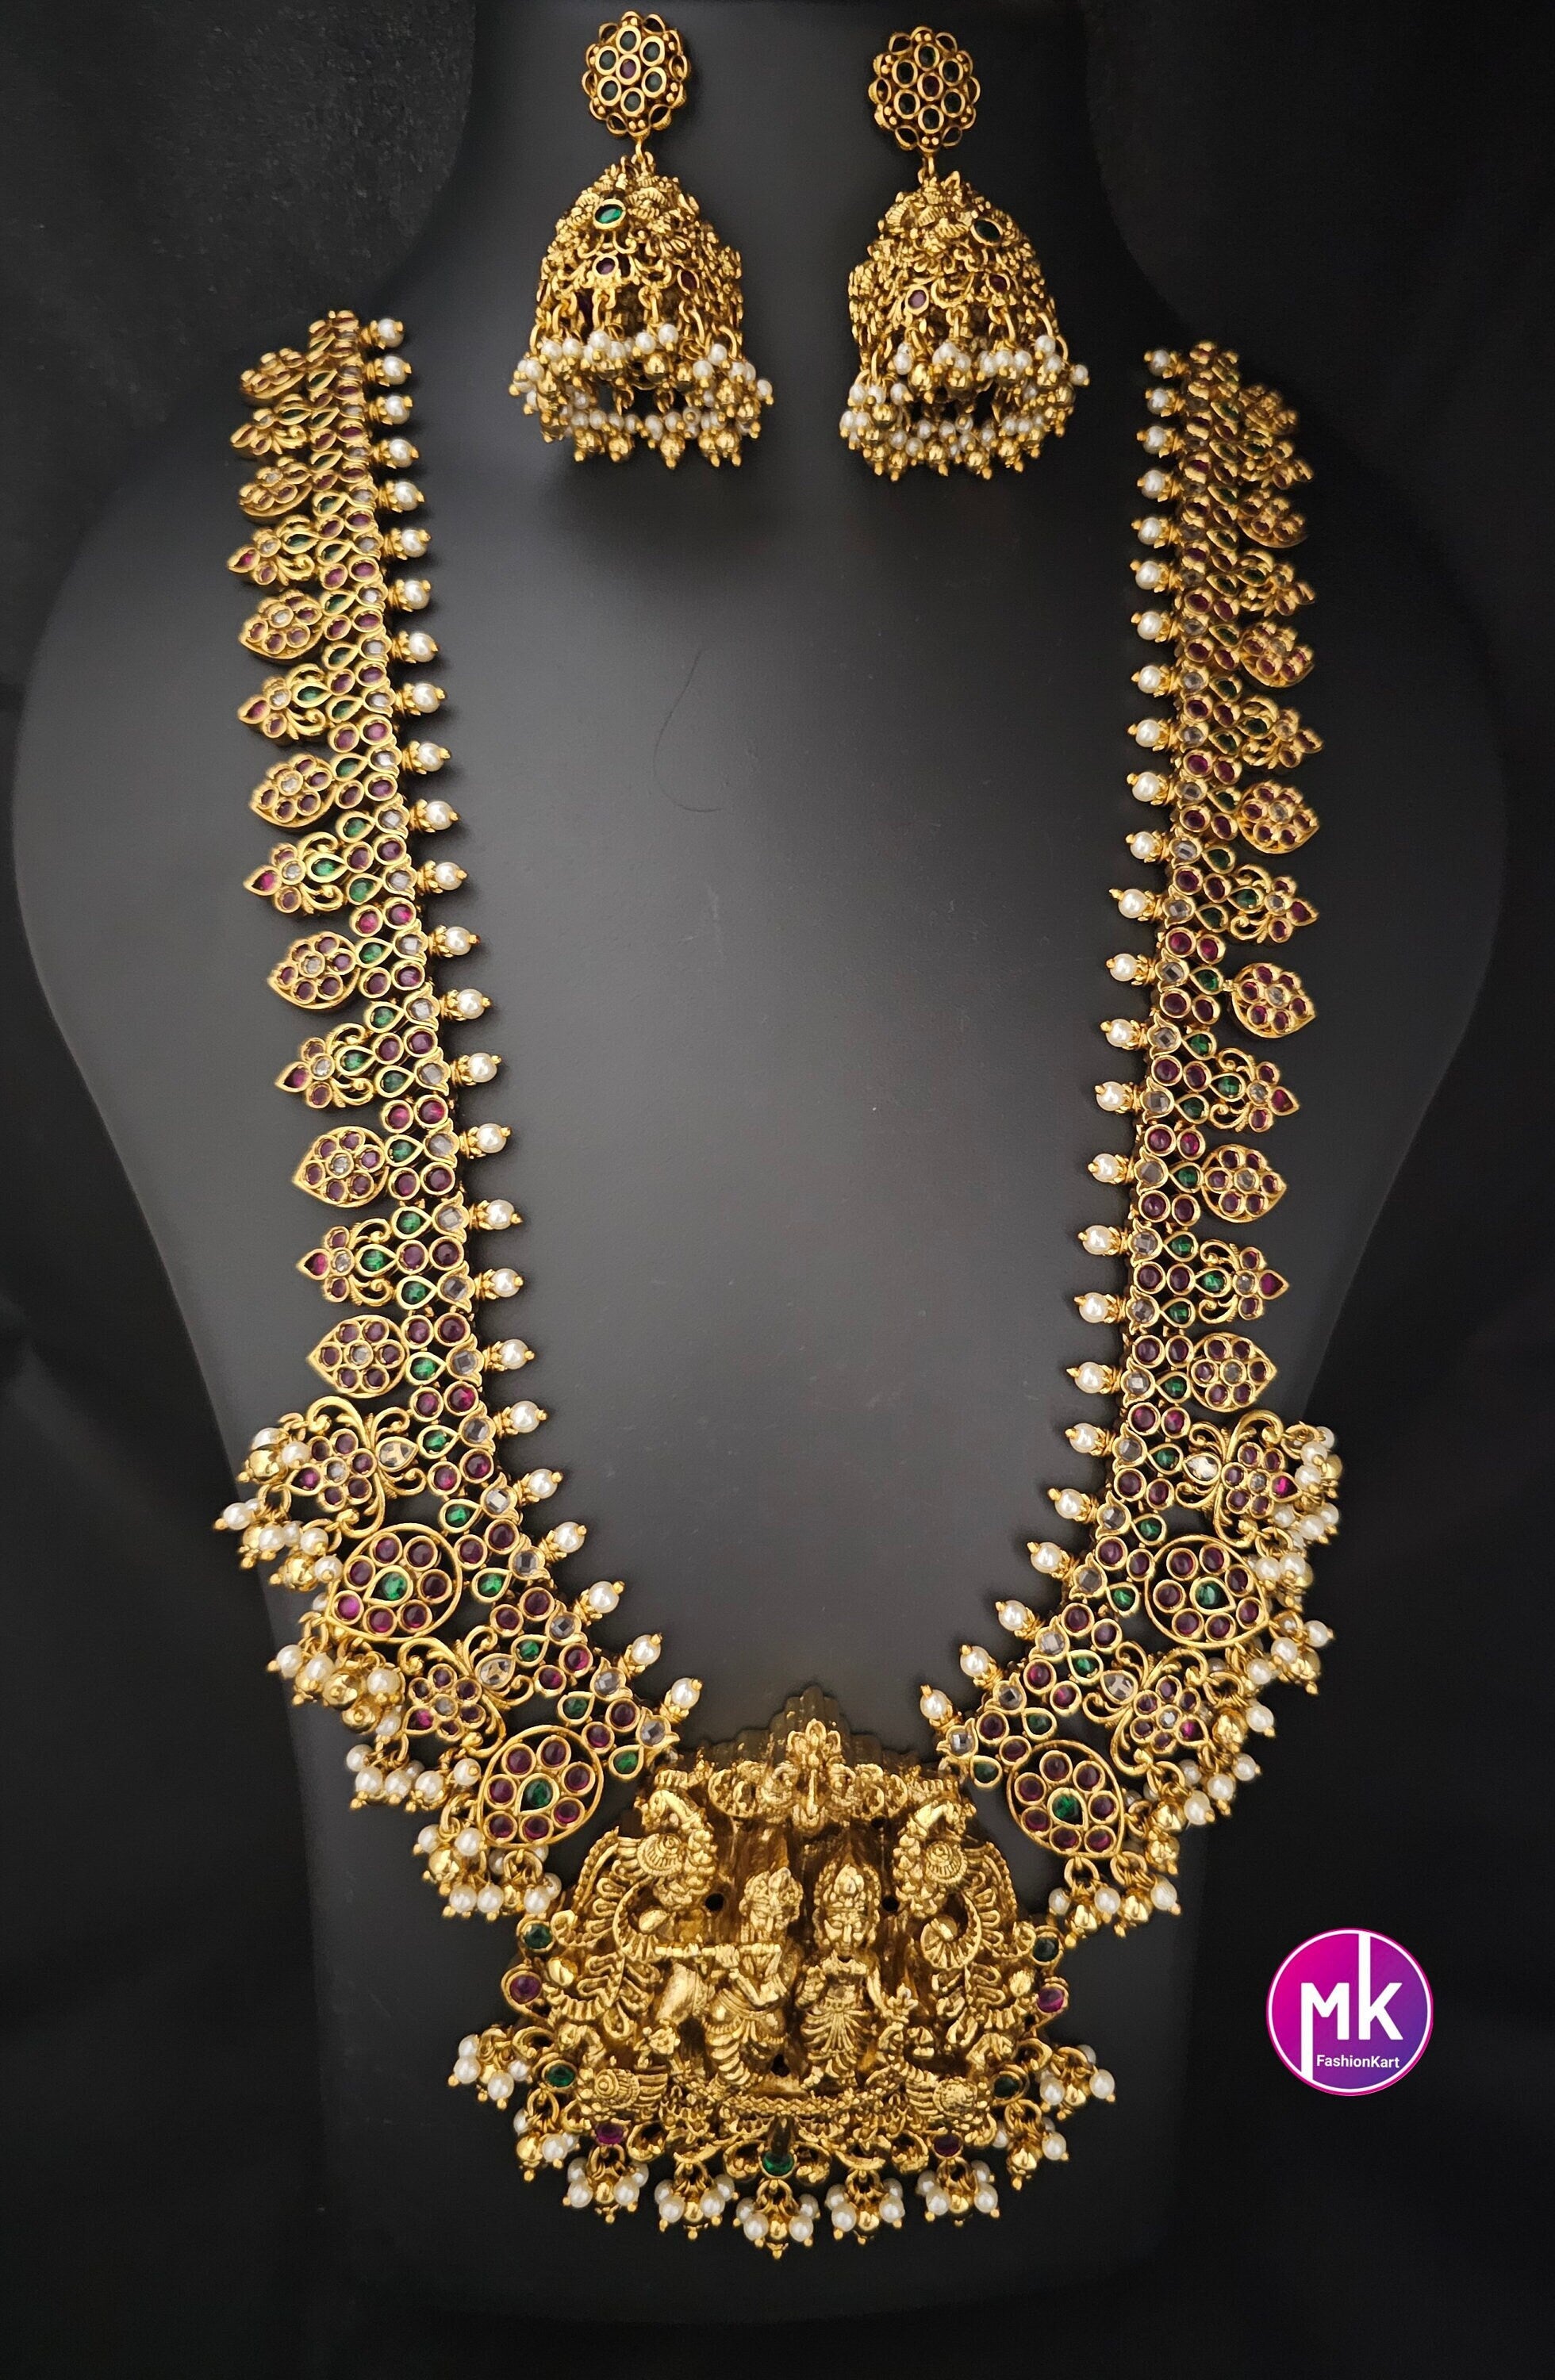 Beautiful Radhakrishna Premium quality Gold Jewelry Replica Haram with big pendent with matching Big Jhumka - Bridal Haram